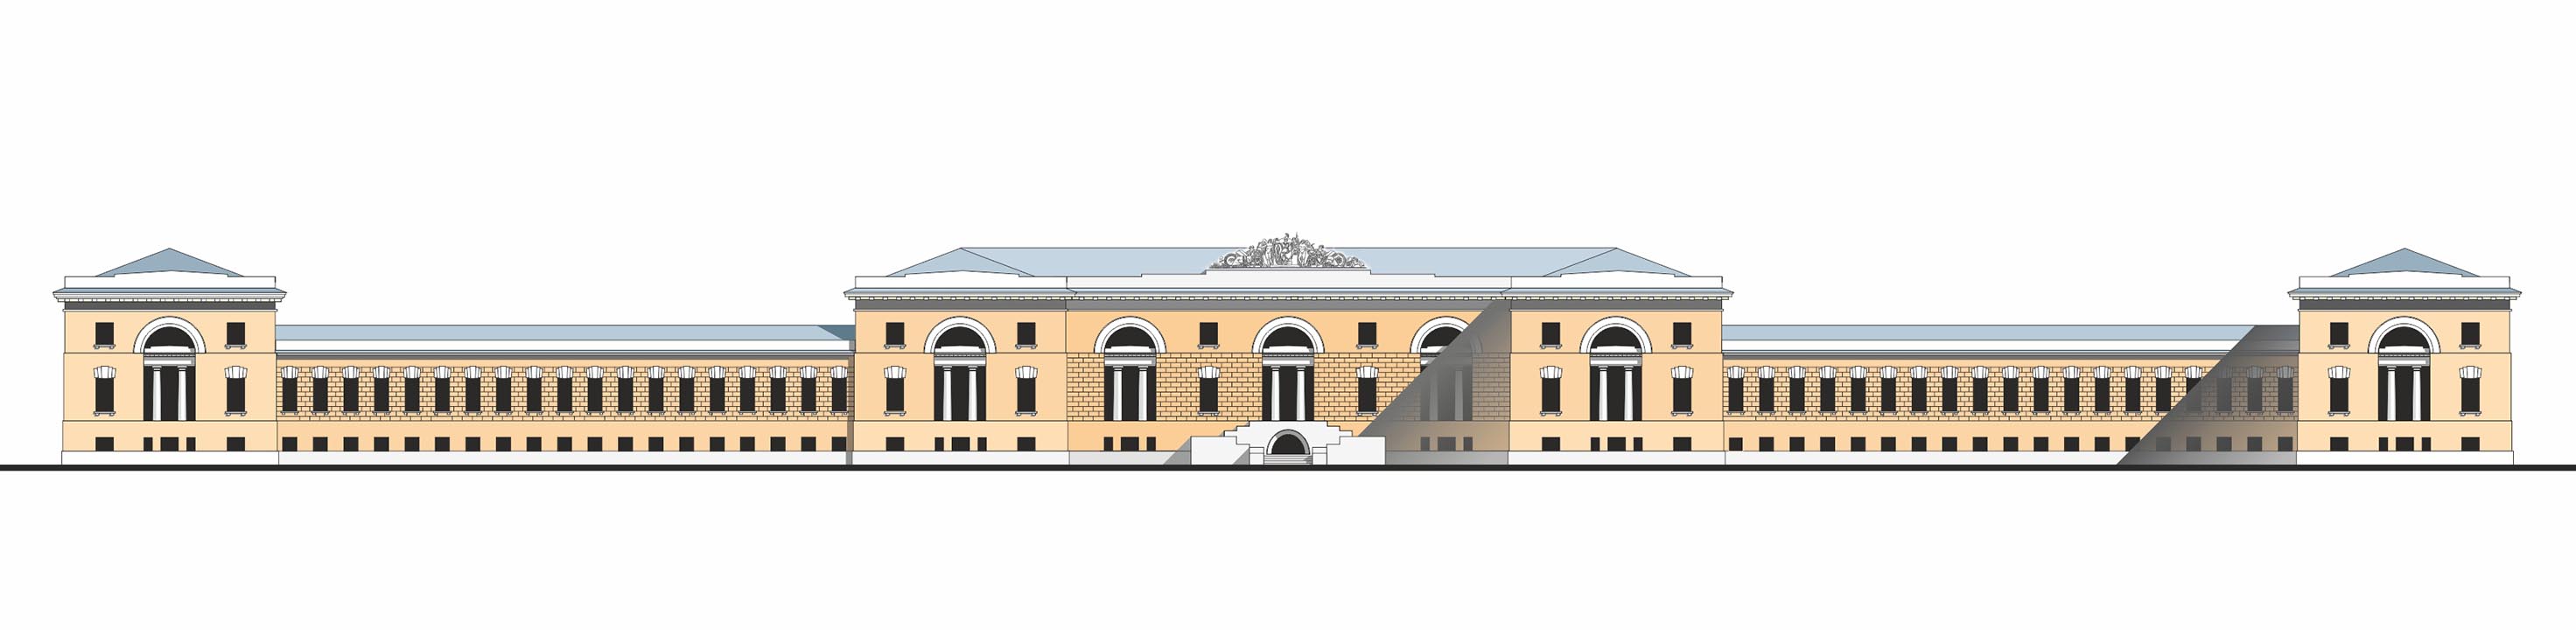 Слободской дворец. Эскиз реставрации